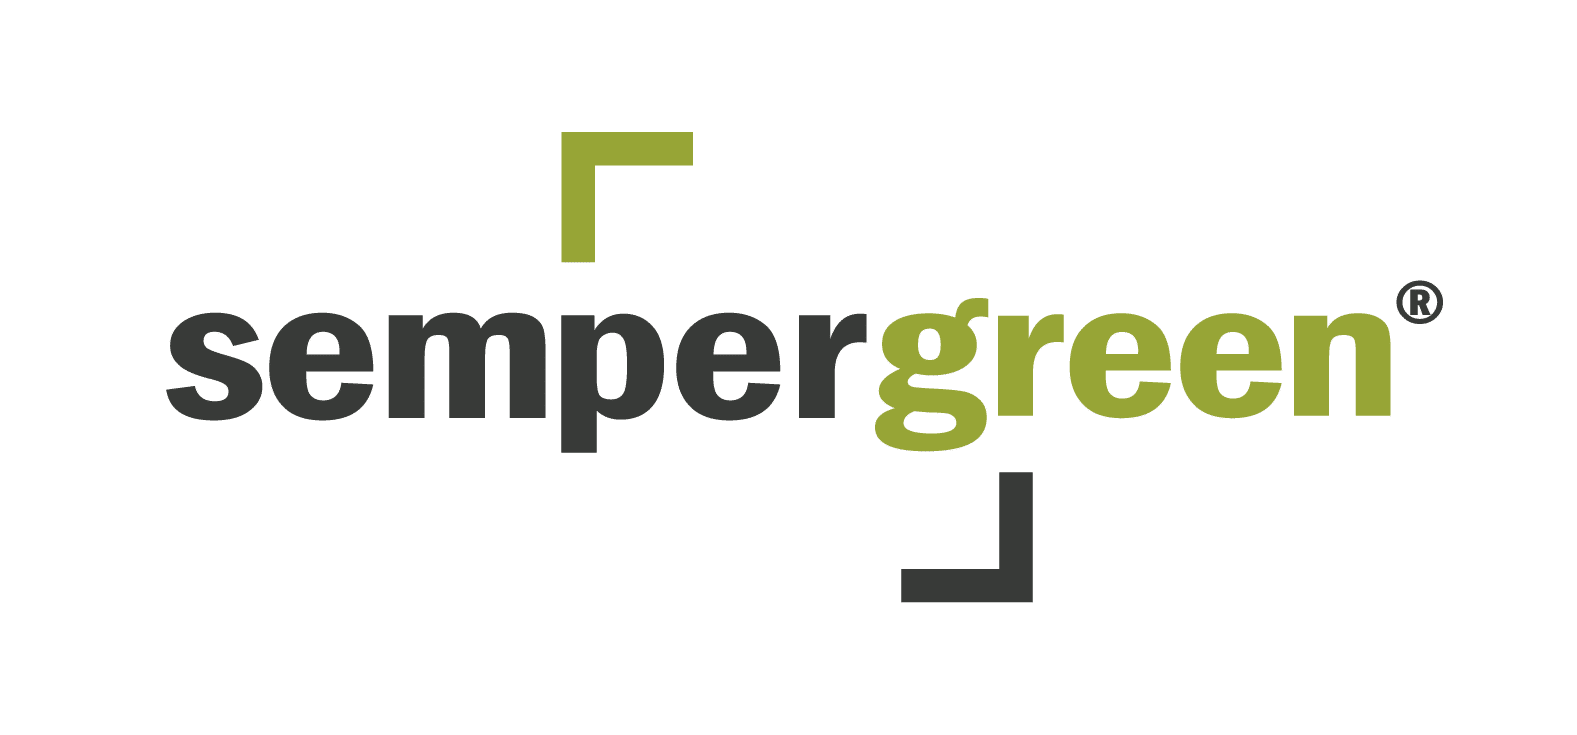 Sempergreen logo